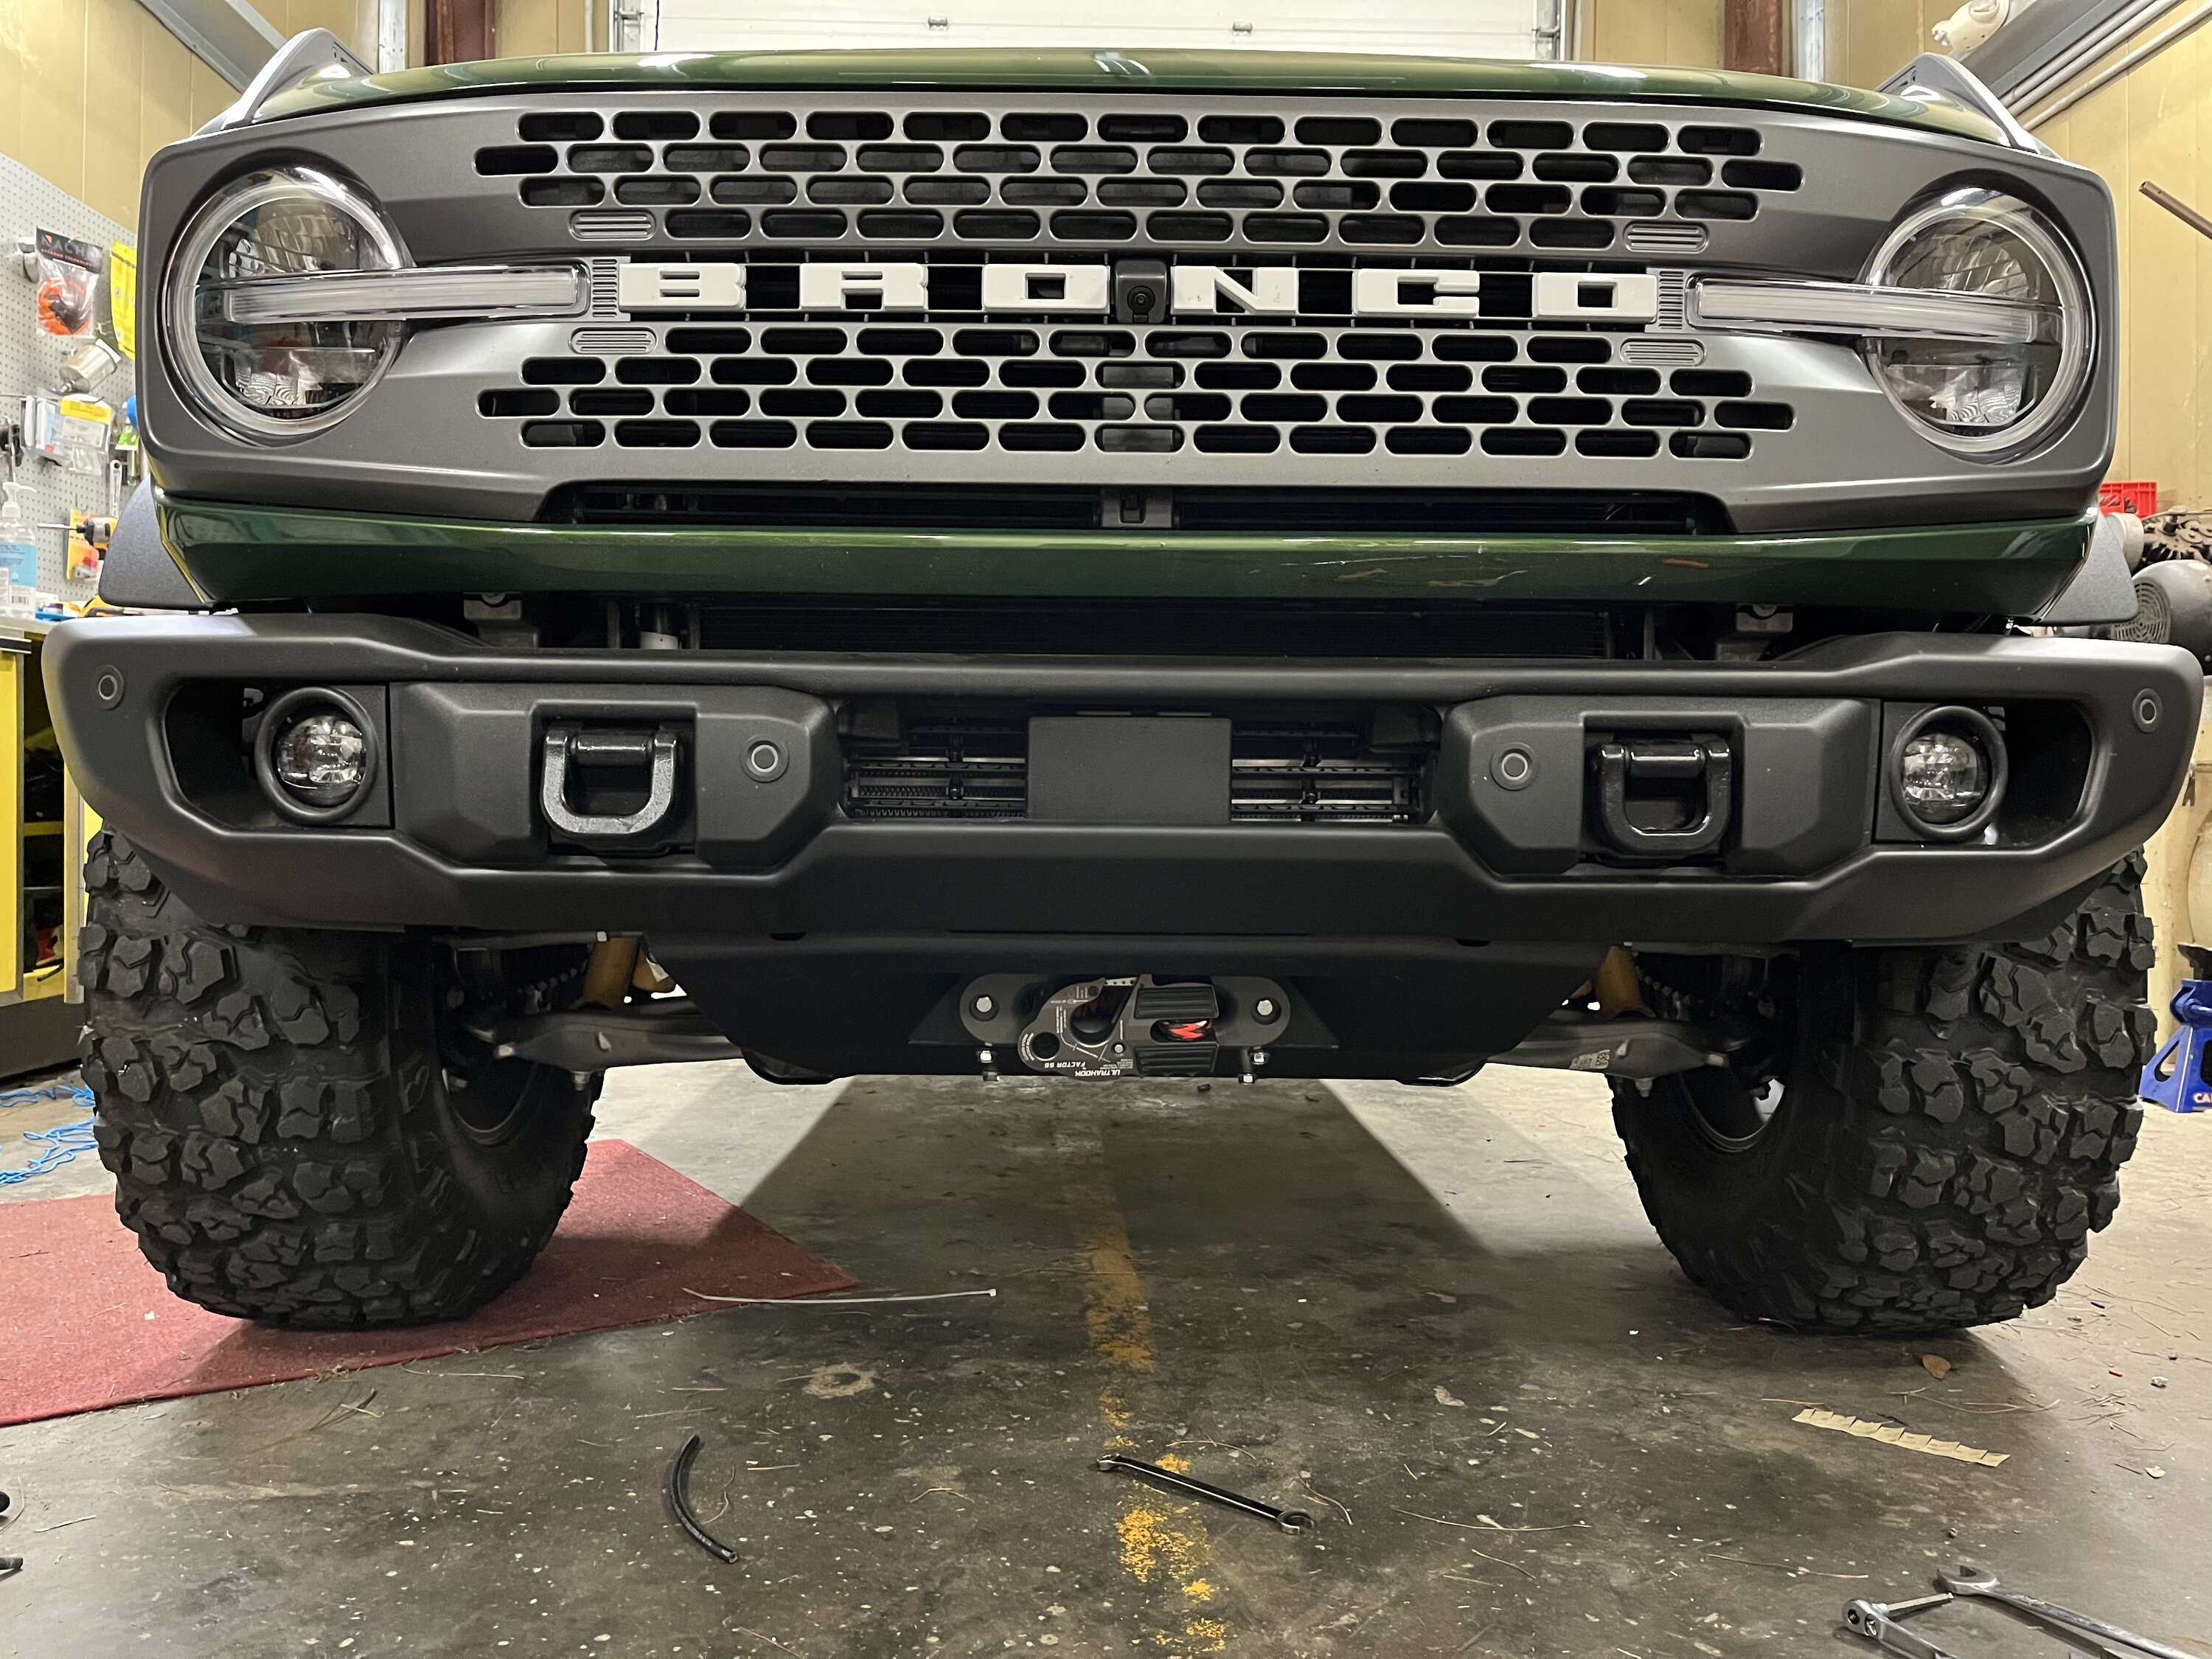 Ford Bronco Recessed Winch Bumper? AFDE4372-021E-41FA-8800-1F3CAC15610C